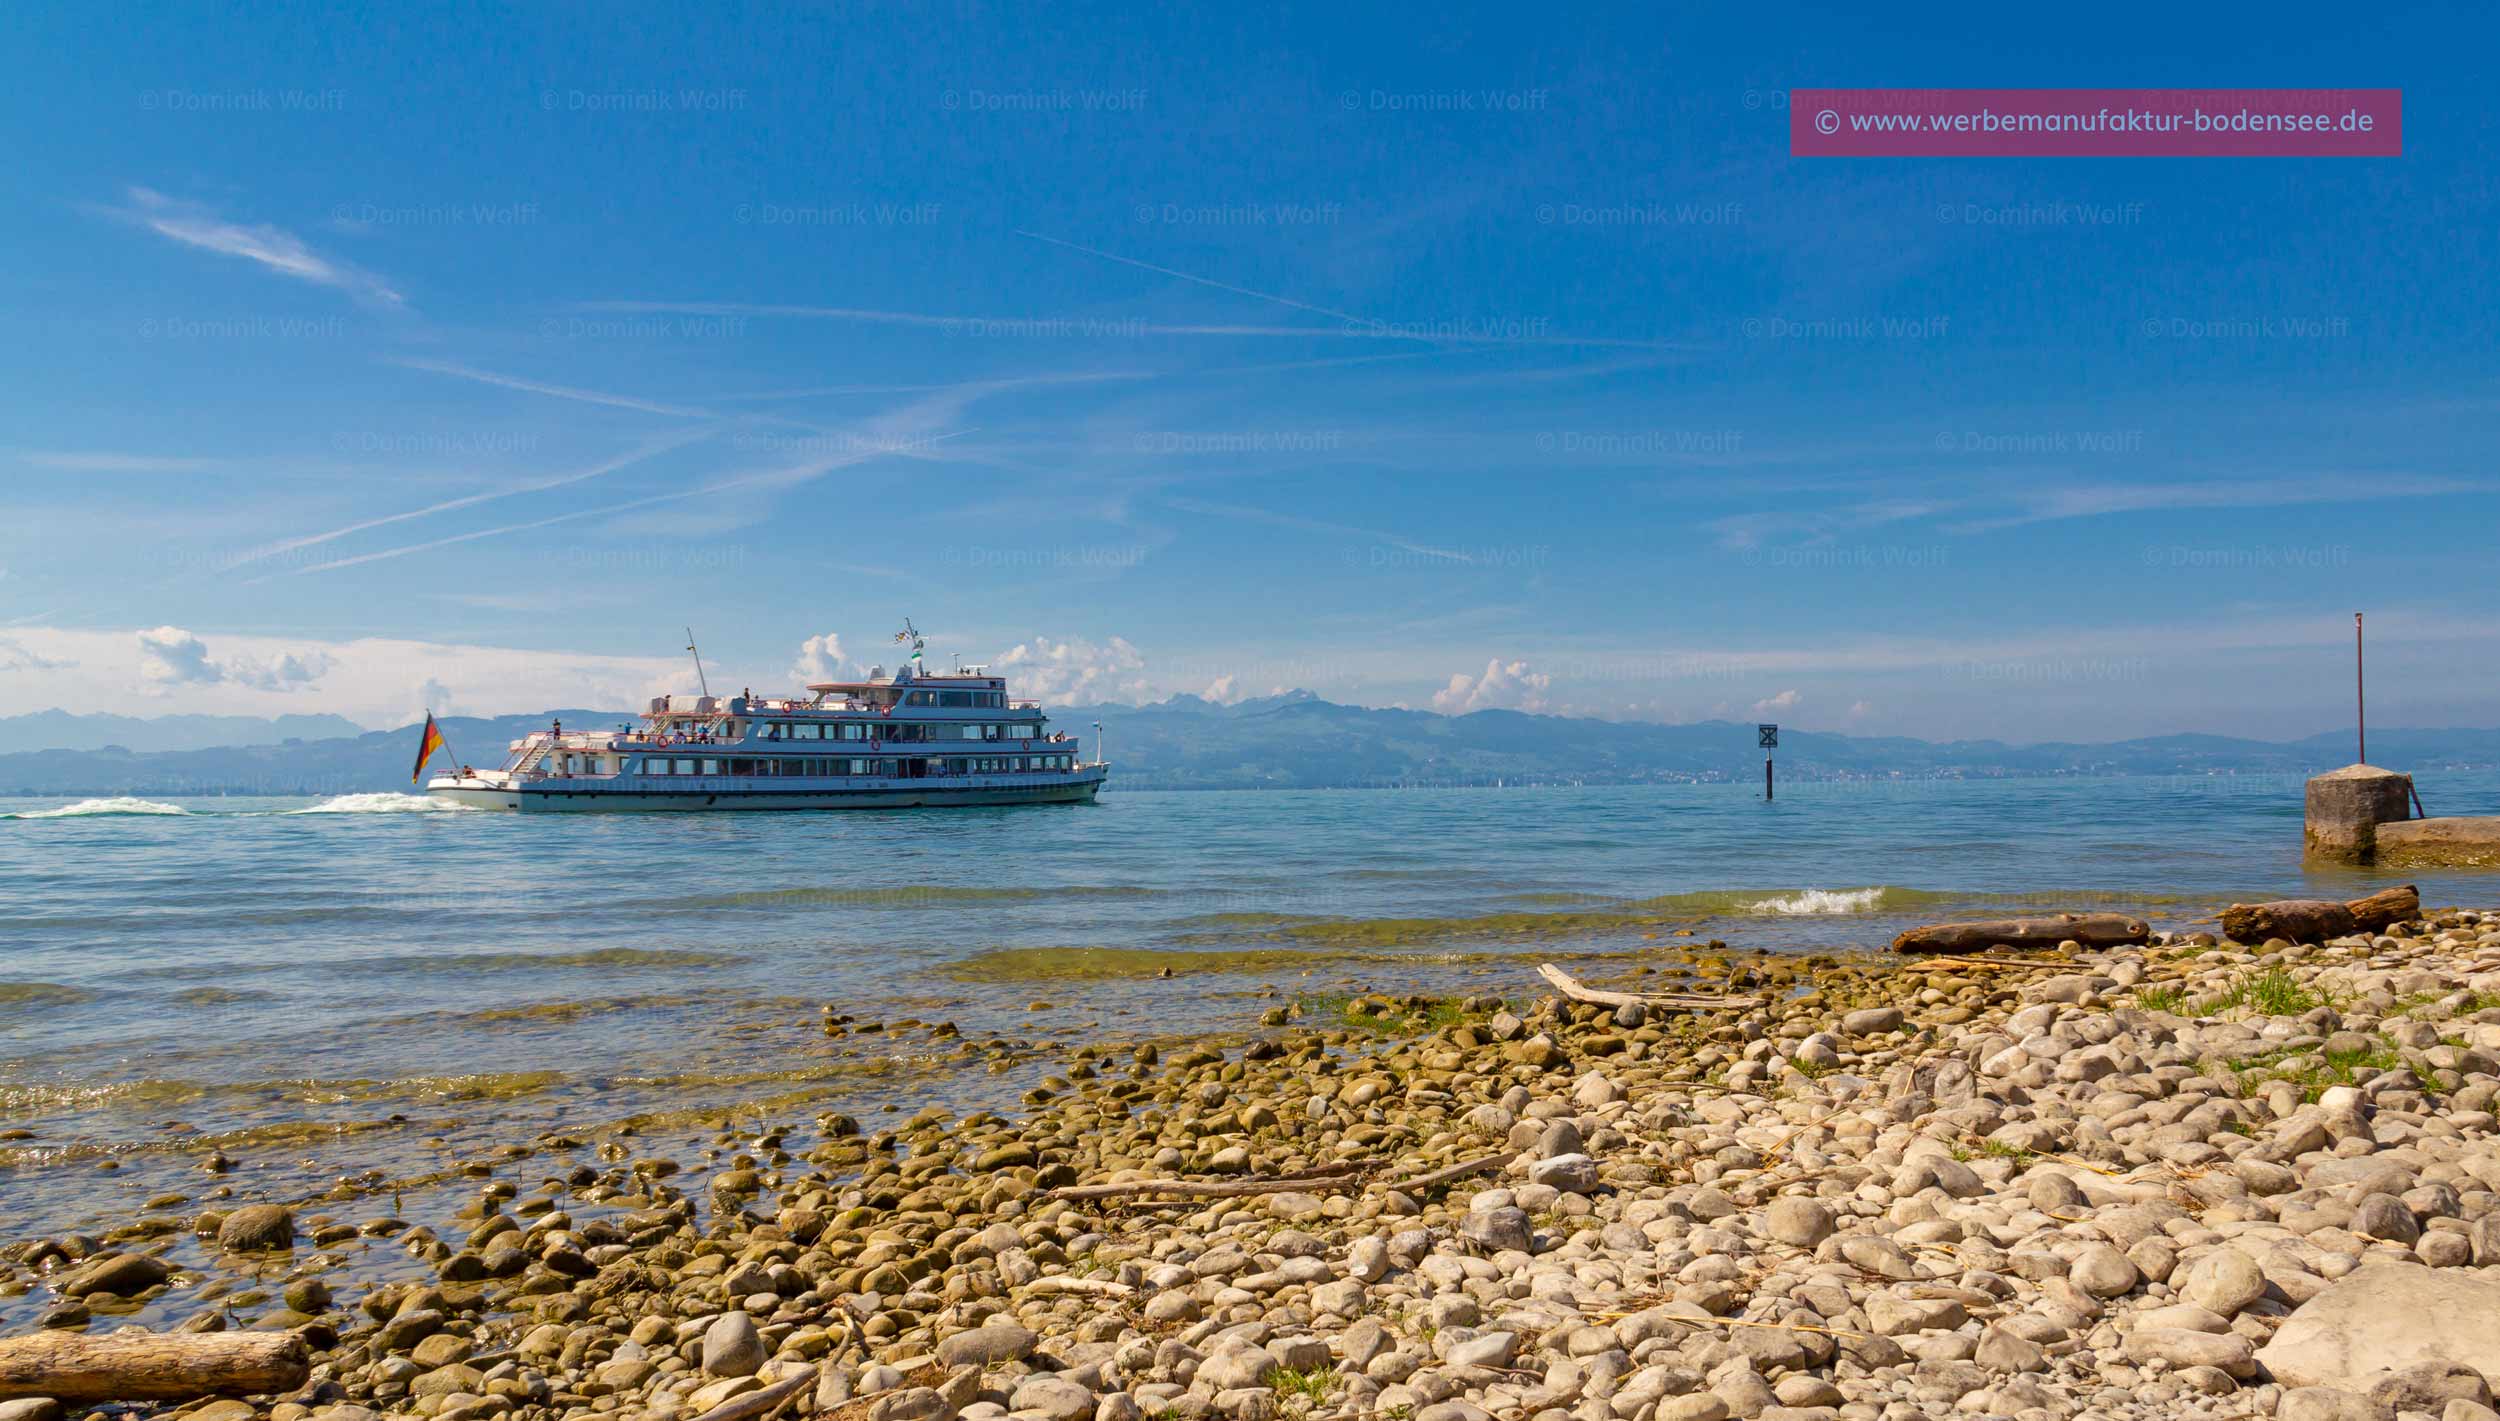 Bild + Foto - Bodensee-Schifffahrt auf dem Bayerischen Bodensee